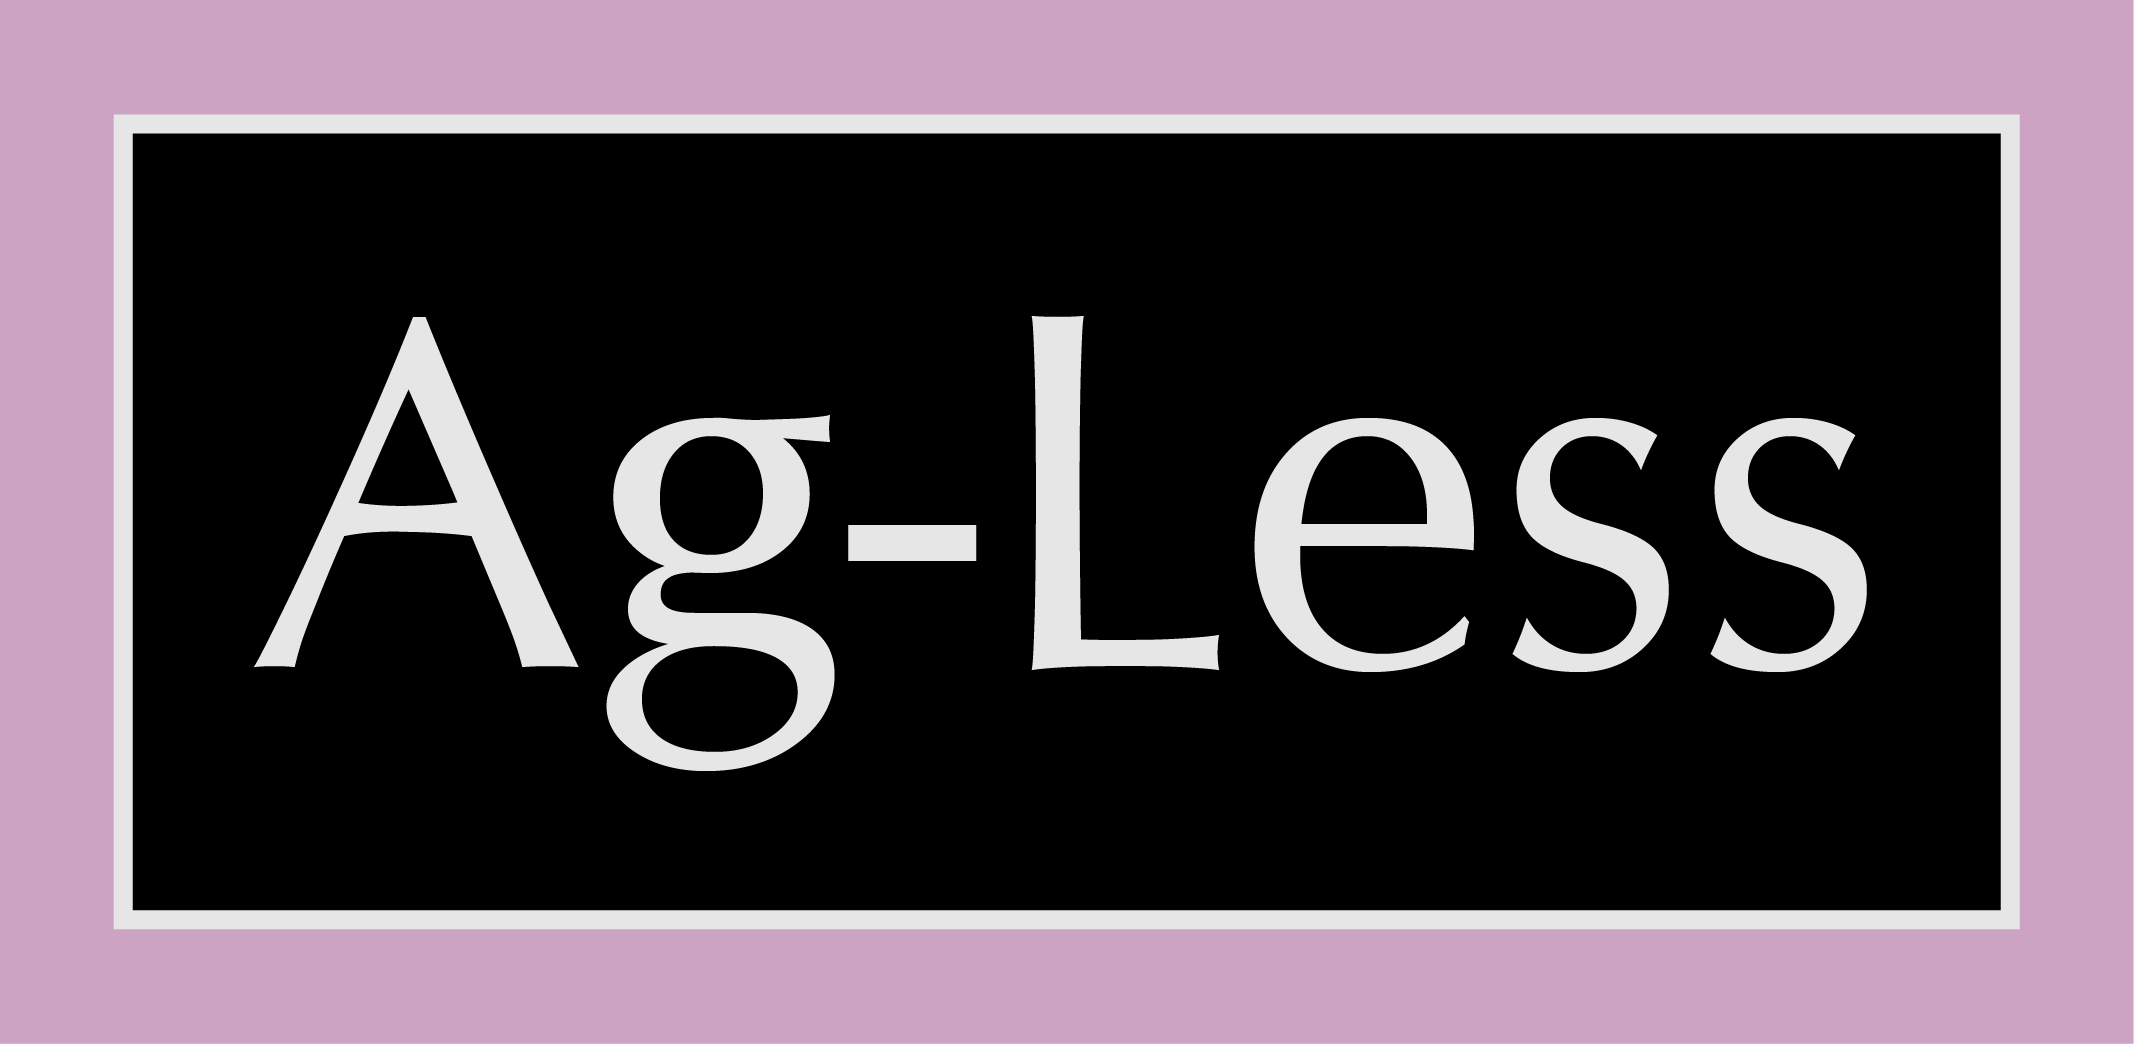 Ag-less